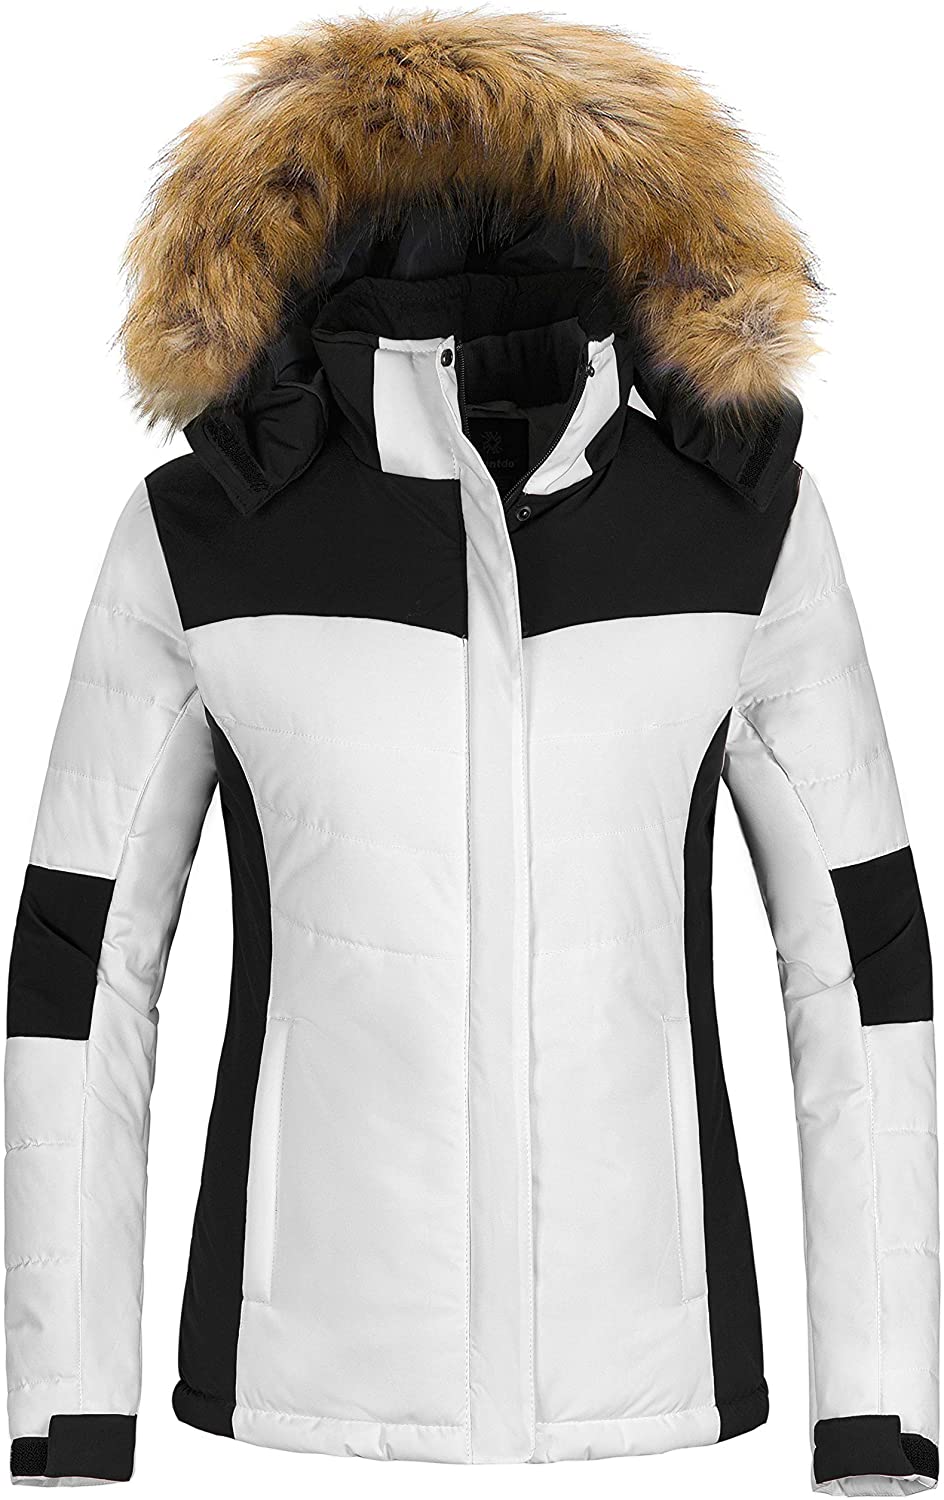 Wantdo Womens Detachable Hood Waterproof Fleece Lined Parka Windproof Ski Jacket